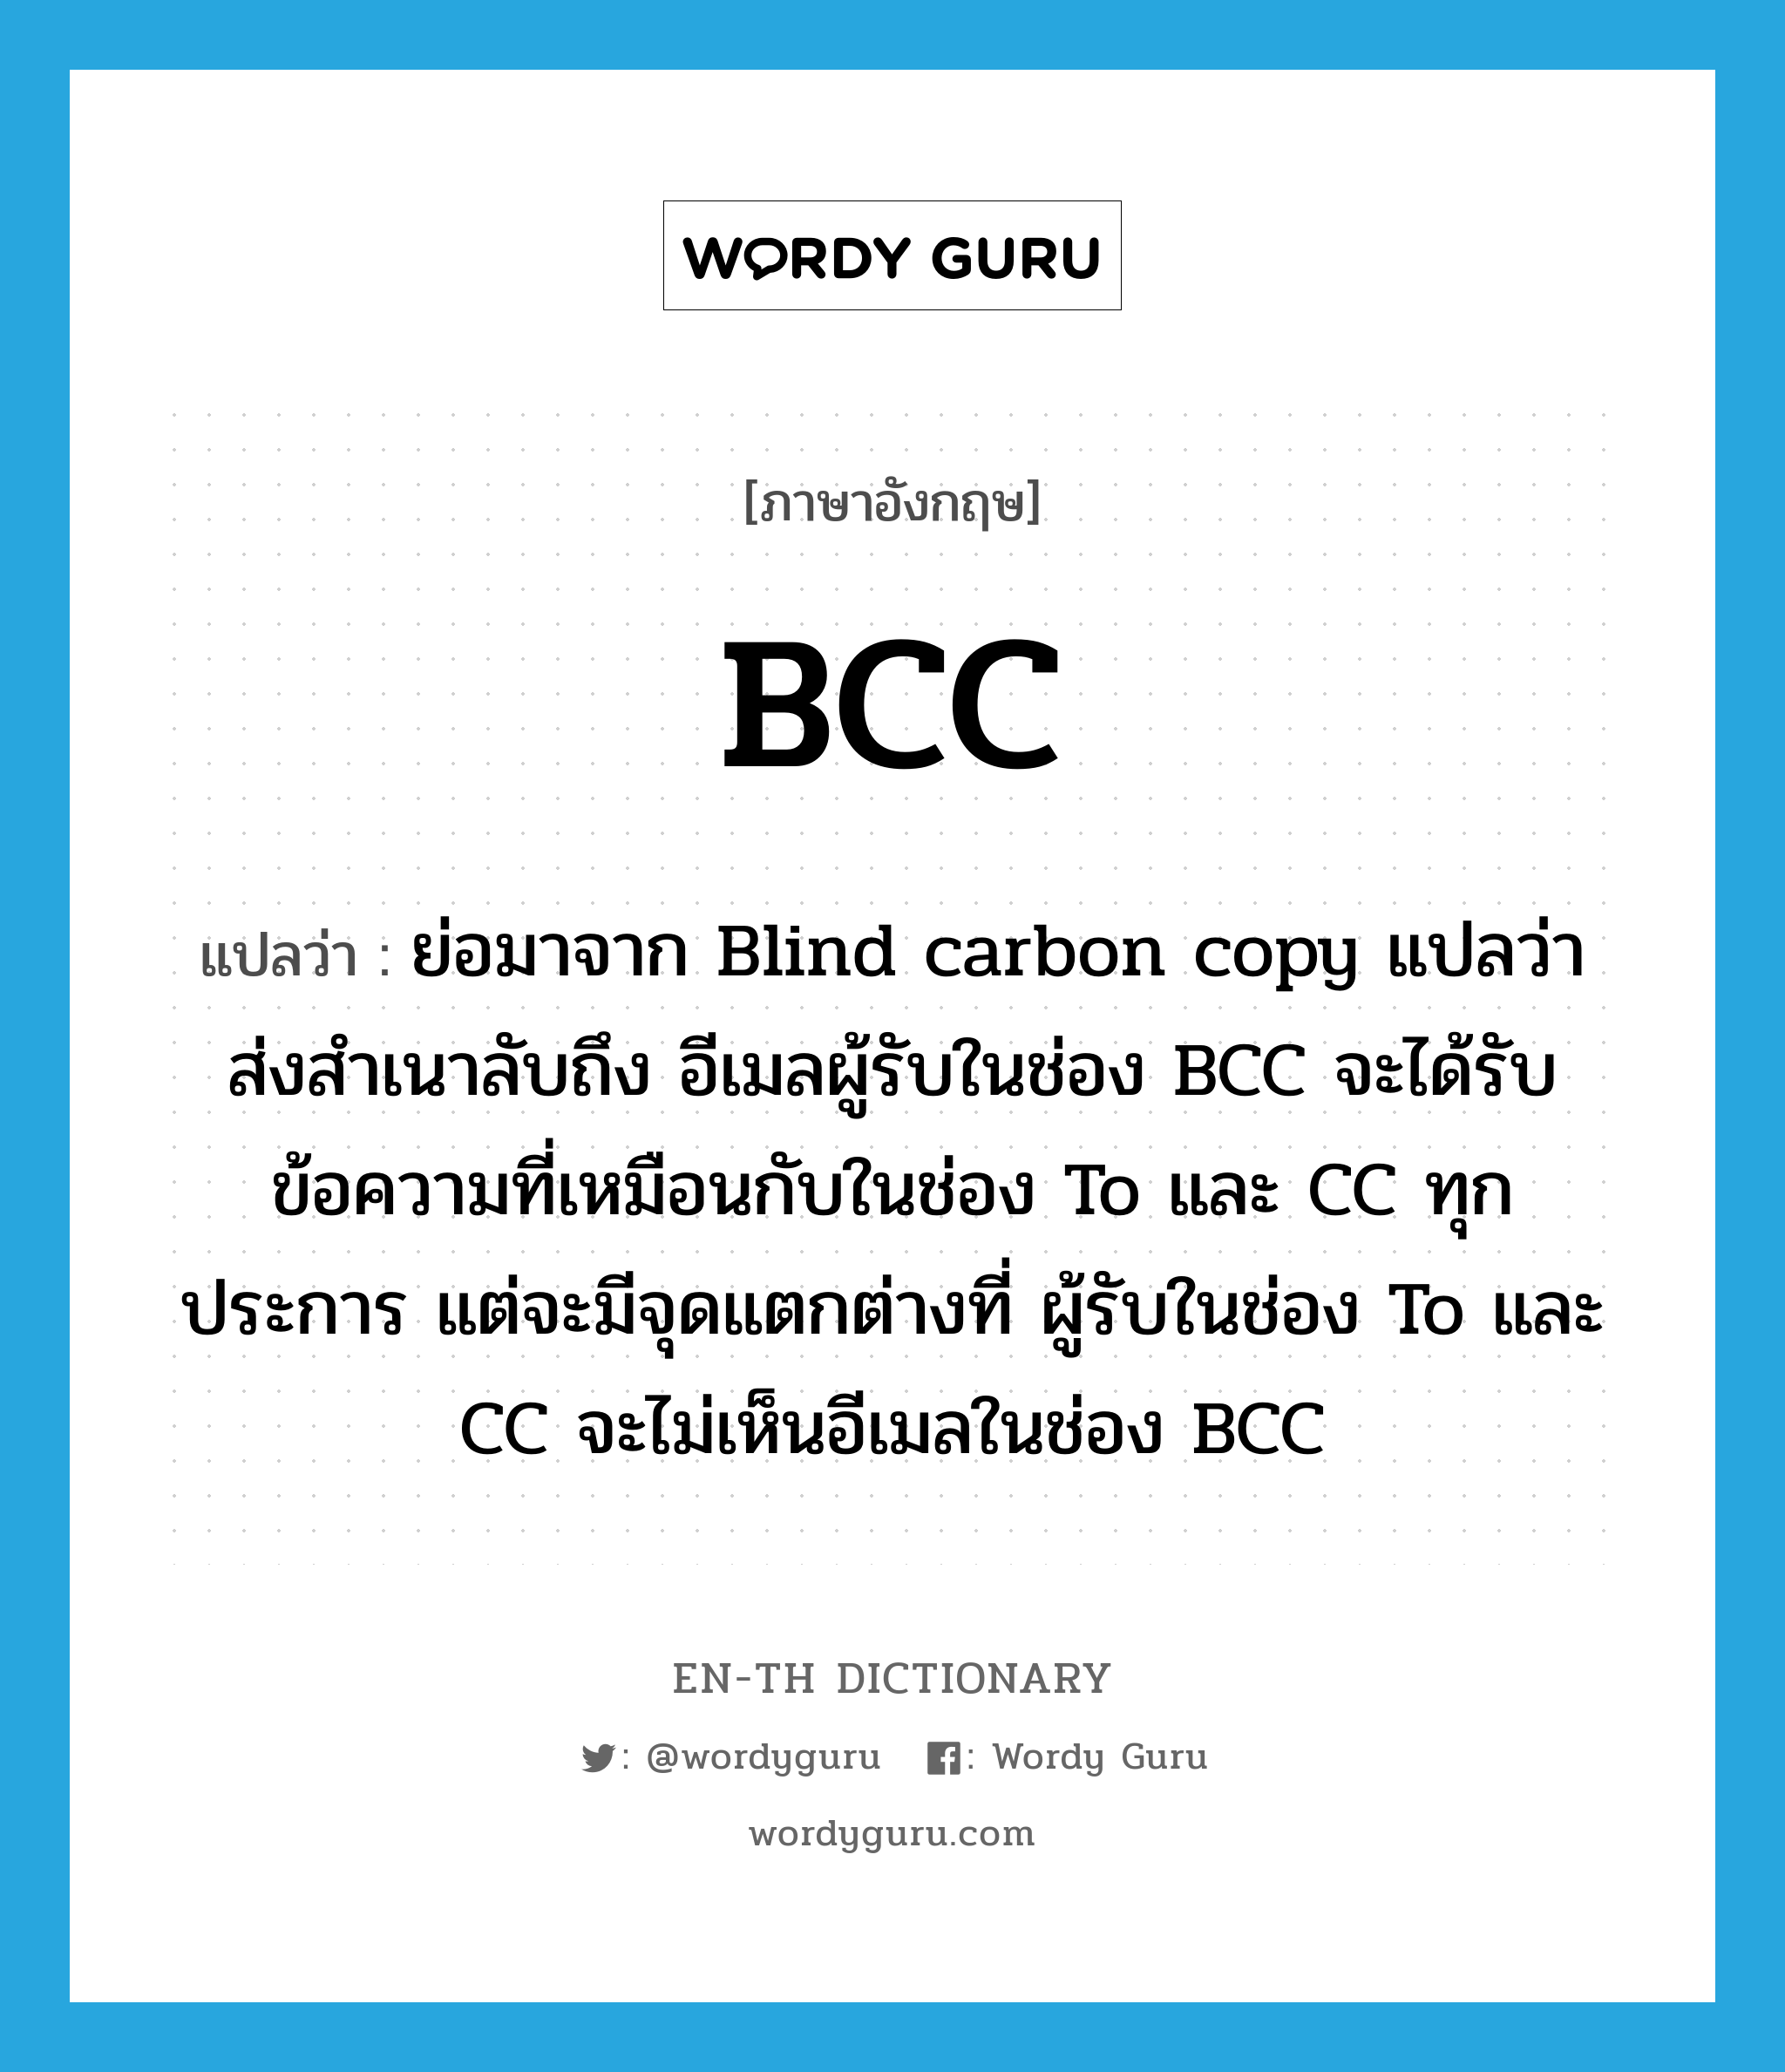 ย่อมาจาก Blind carbon copy แปลว่า ส่งสำเนาลับถึง อีเมลผู้รับในช่อง BCC จะได้รับข้อความที่เหมือนกับในช่อง To และ CC ทุกประการ แต่จะมีจุดแตกต่างที่ ผู้รับในช่อง To และ CC จะไม่เห็นอีเมลในช่อง BCC ภาษาอังกฤษ?, คำศัพท์ภาษาอังกฤษ ย่อมาจาก Blind carbon copy แปลว่า ส่งสำเนาลับถึง อีเมลผู้รับในช่อง BCC จะได้รับข้อความที่เหมือนกับในช่อง To และ CC ทุกประการ แต่จะมีจุดแตกต่างที่ ผู้รับในช่อง To และ CC จะไม่เห็นอีเมลในช่อง BCC แปลว่า BCC ประเภท abbr หมวด abbr